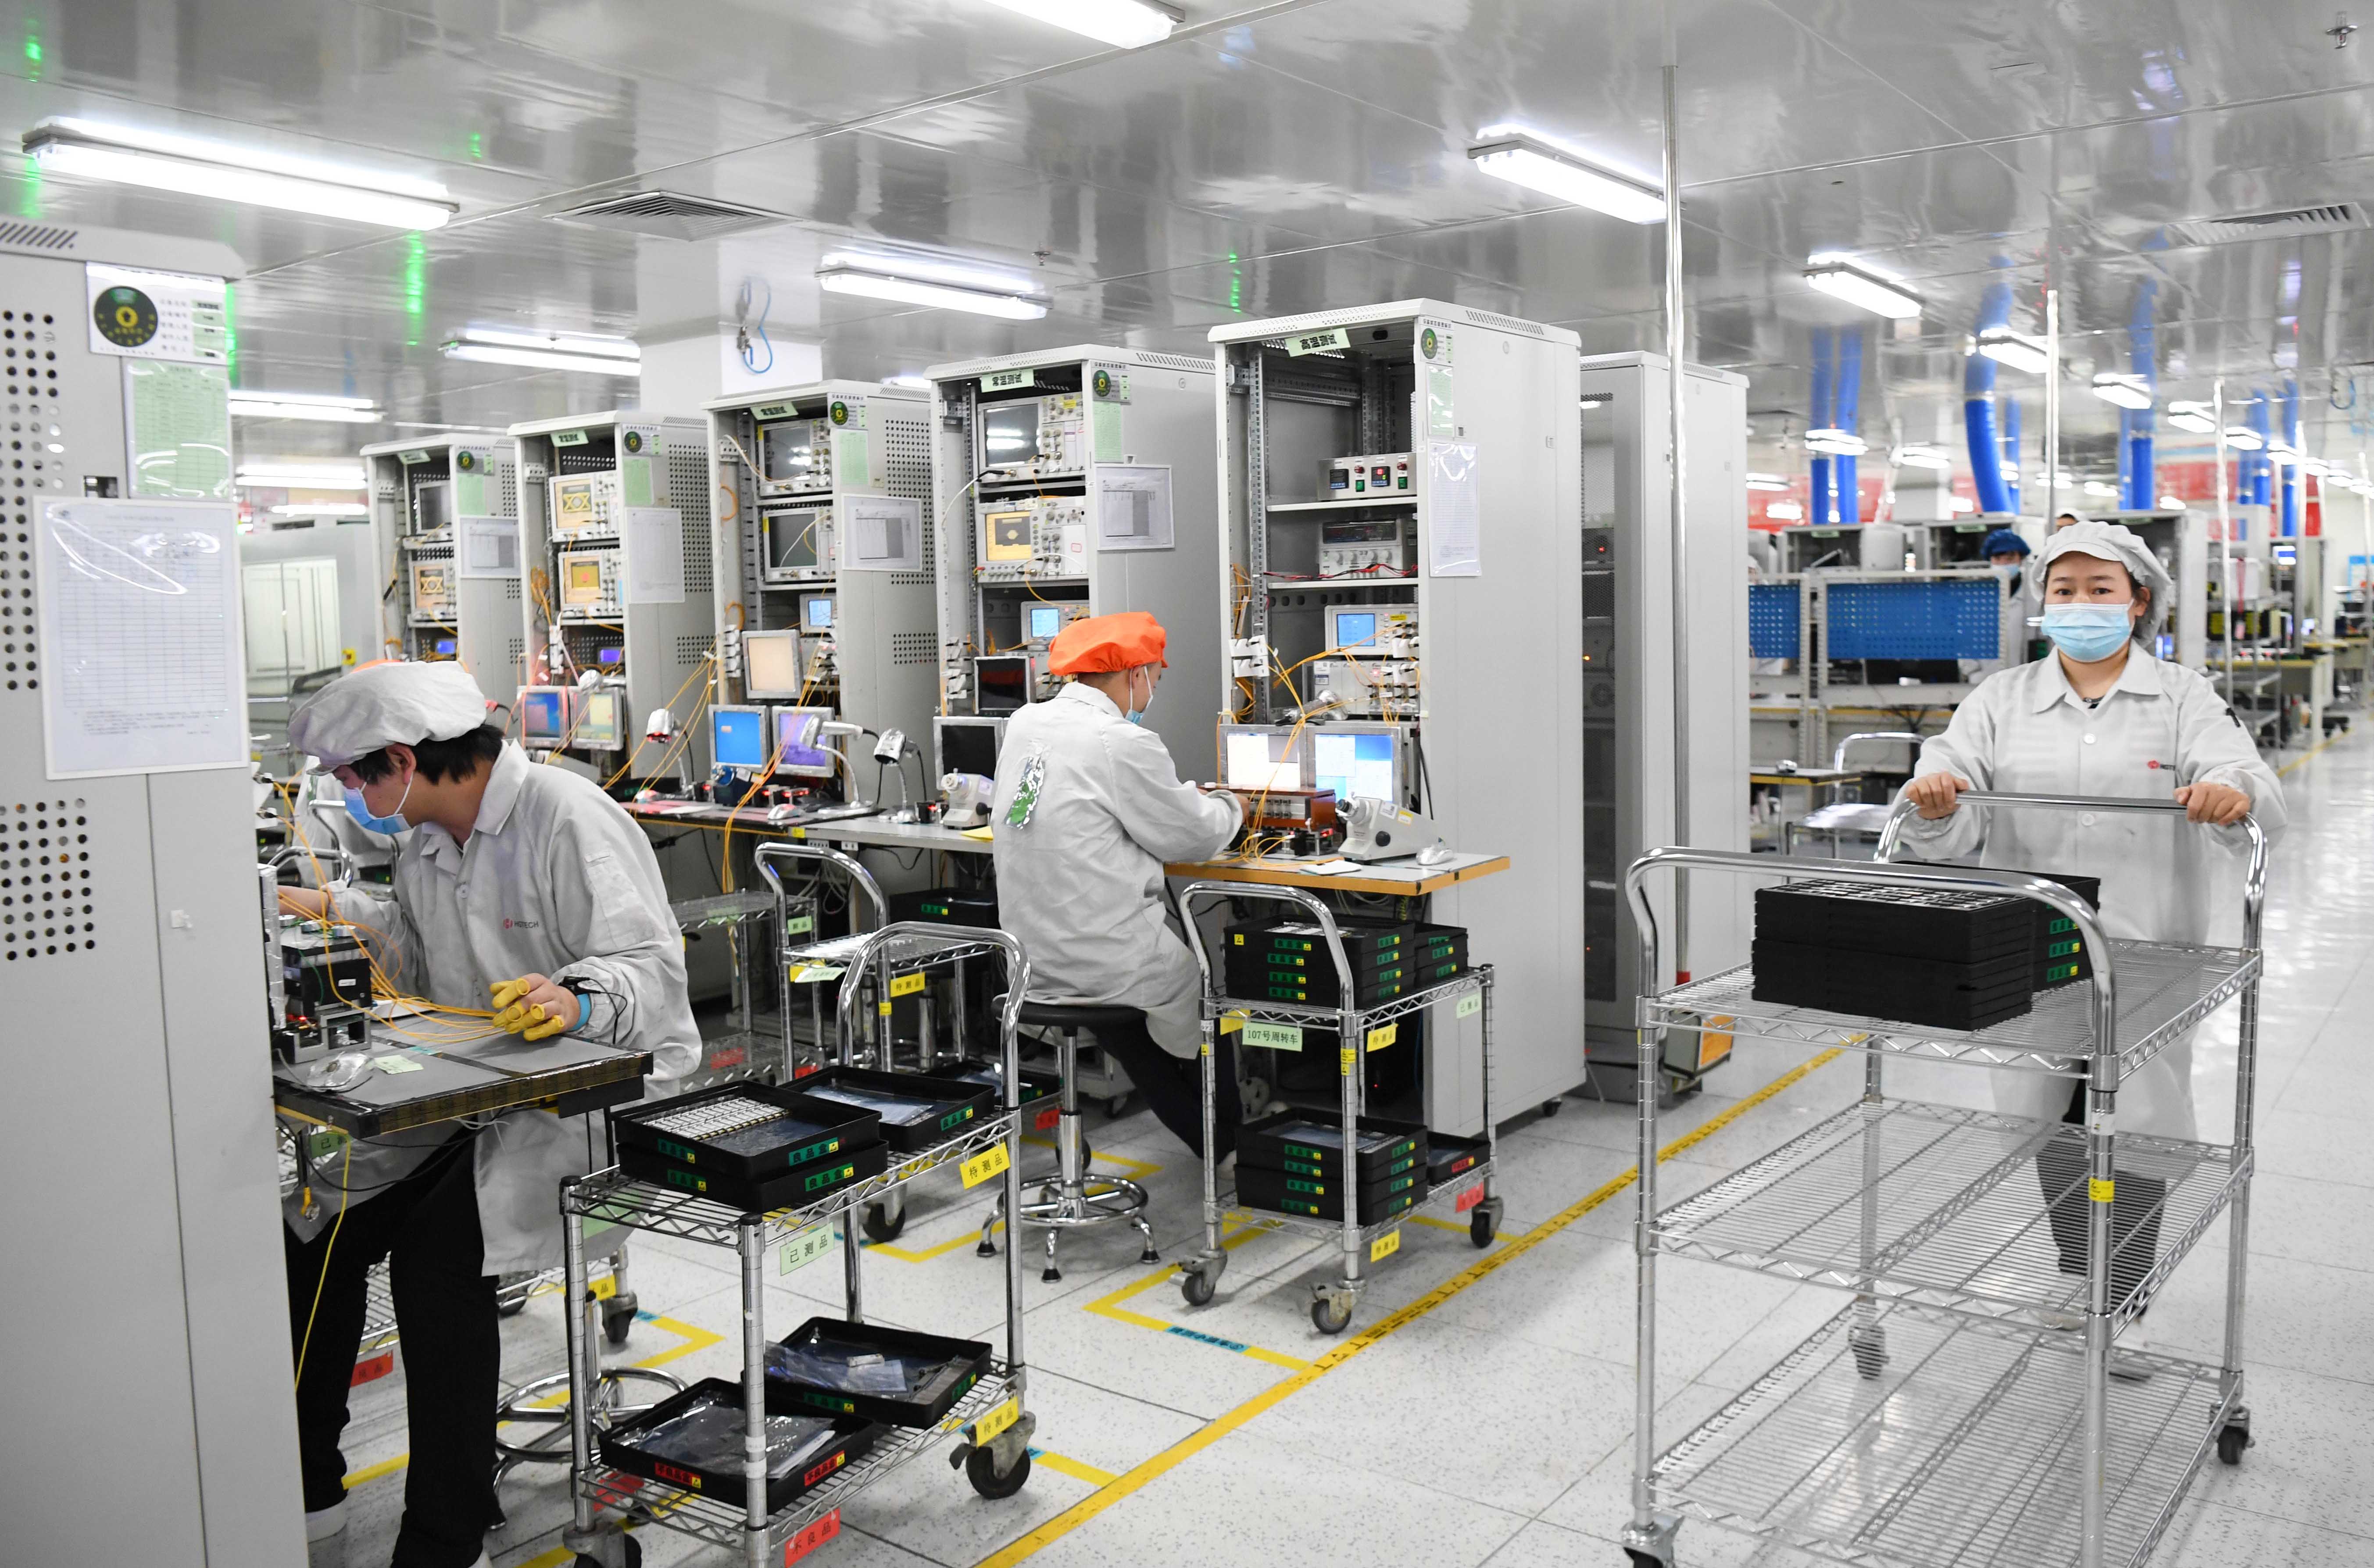 日讯 2月15日大年初四,华工科技核心子公司华工正源5g模块生产车间里